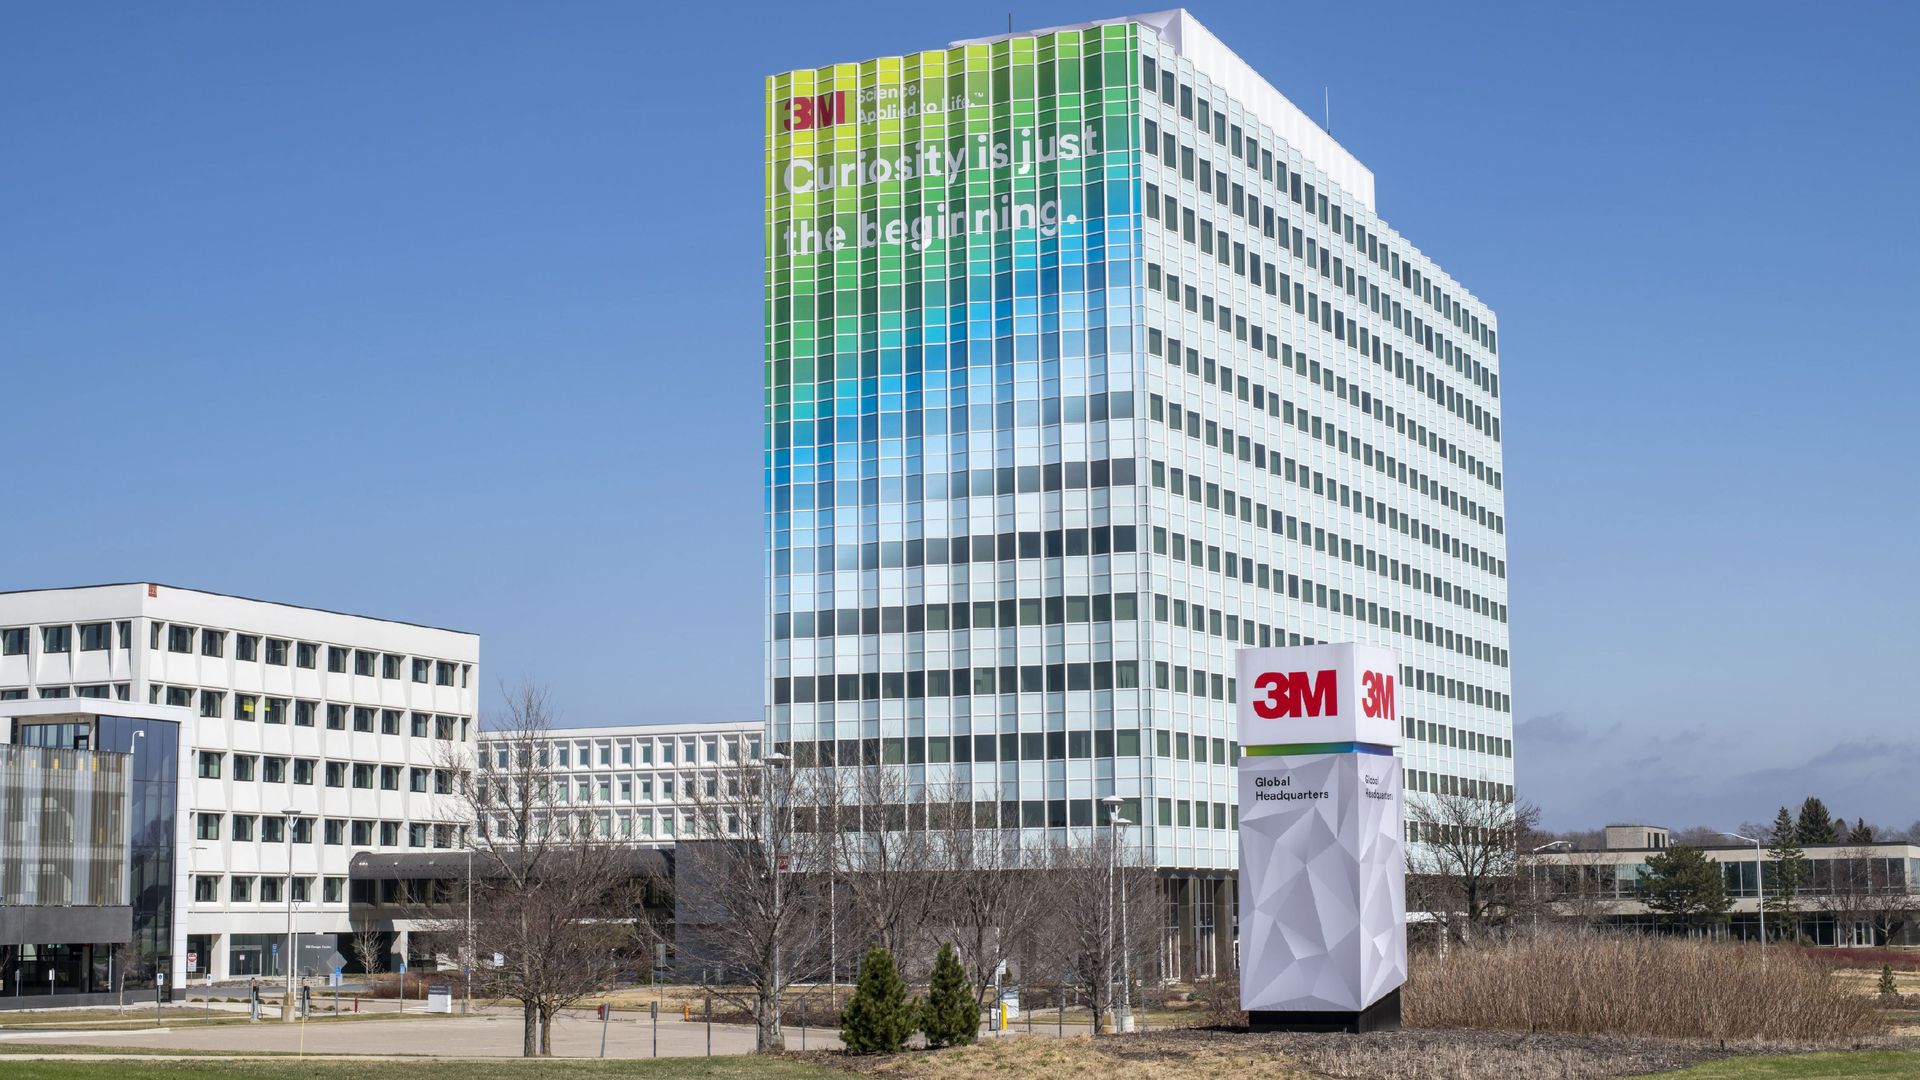 3M's headquarters building 